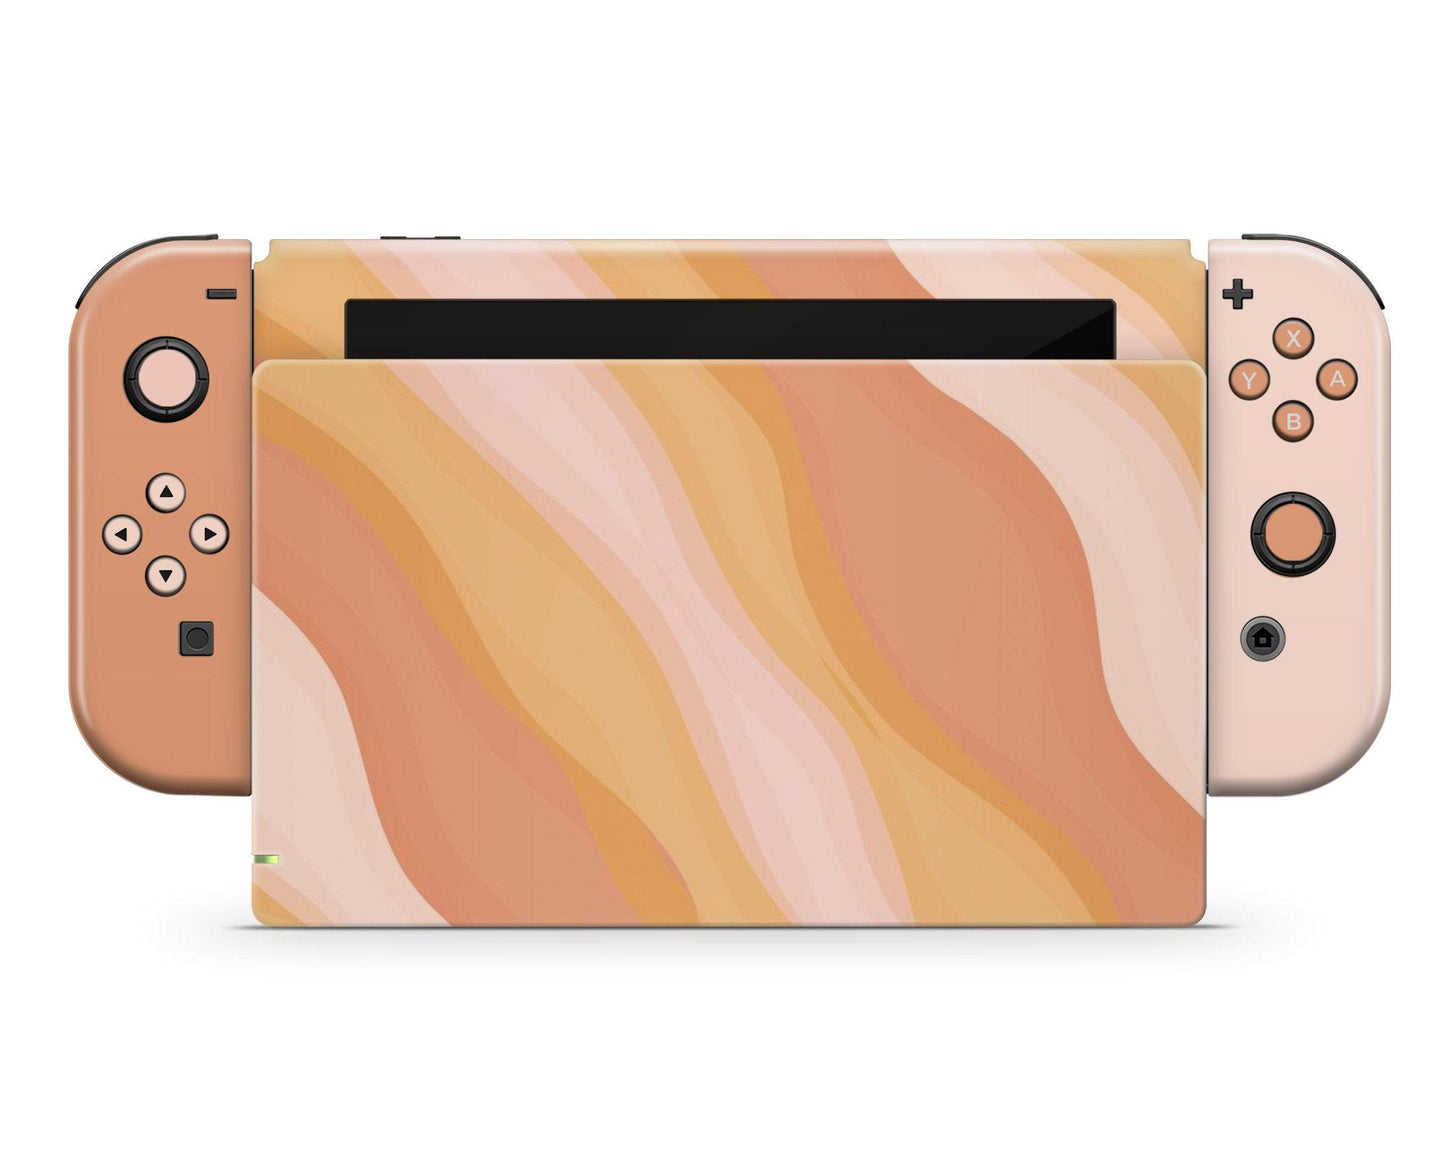 Lux Skins Nintendo Switch Sunset in Santorini Full Set Skins - Art Artwork Skin